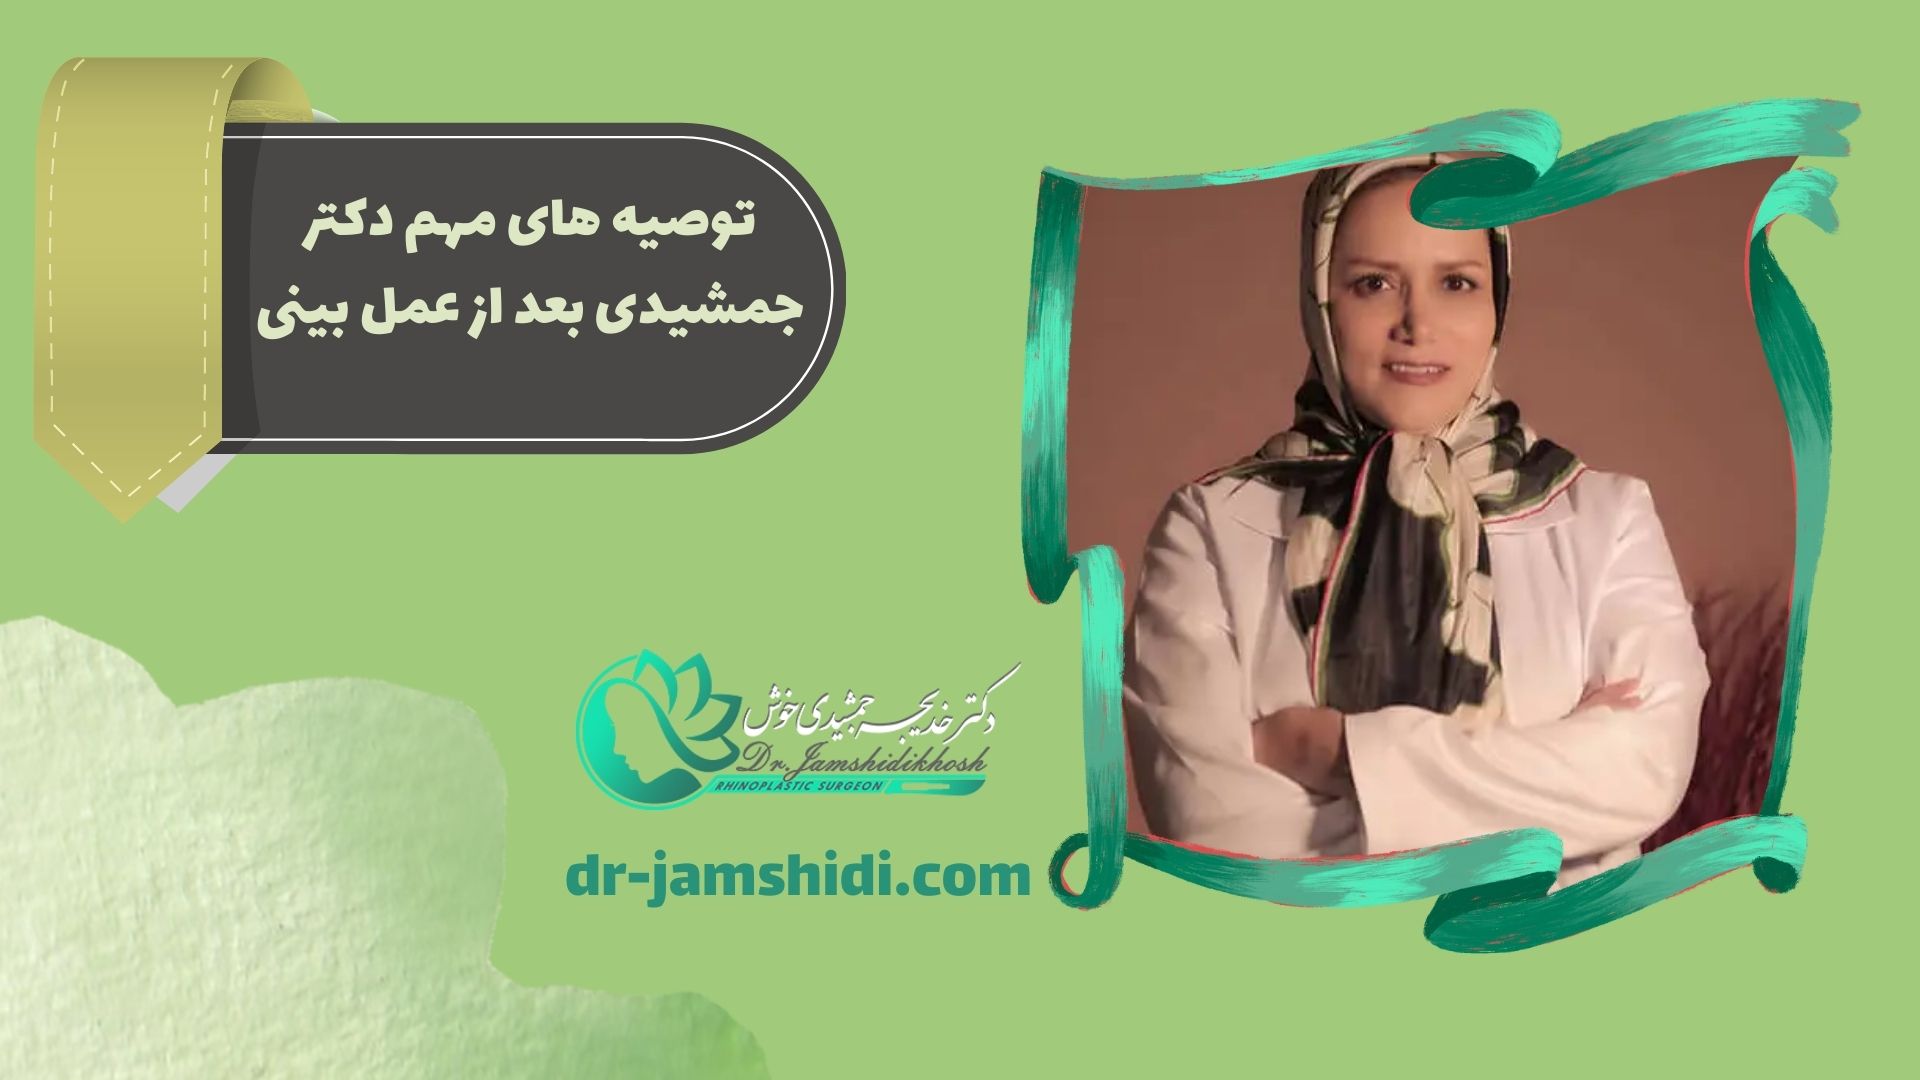 توصیه های مهم خانم دکتر جمشیدی بعد از عمل بینی